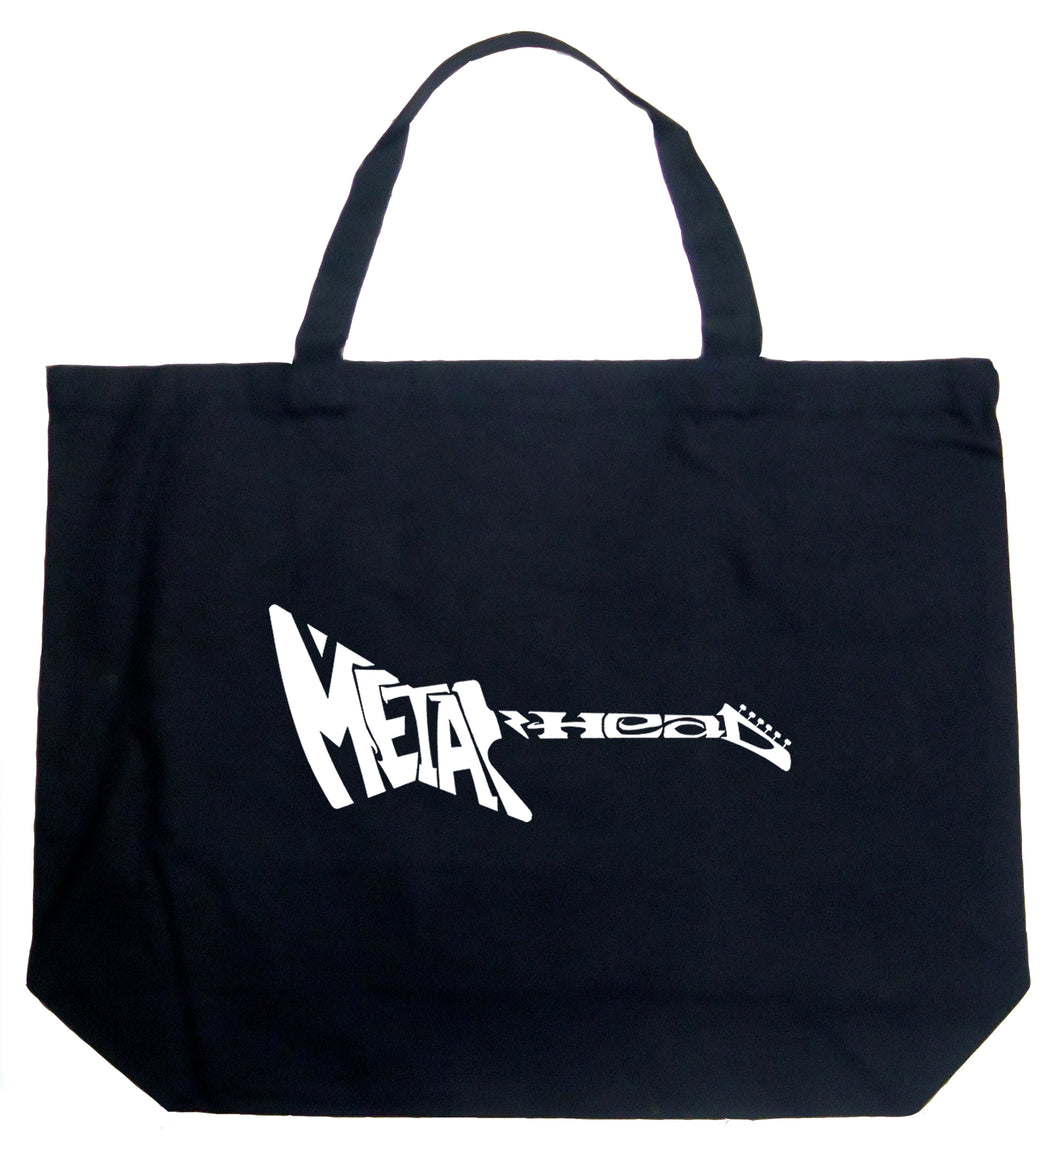 Metal Head - Large Word Art Tote Bag